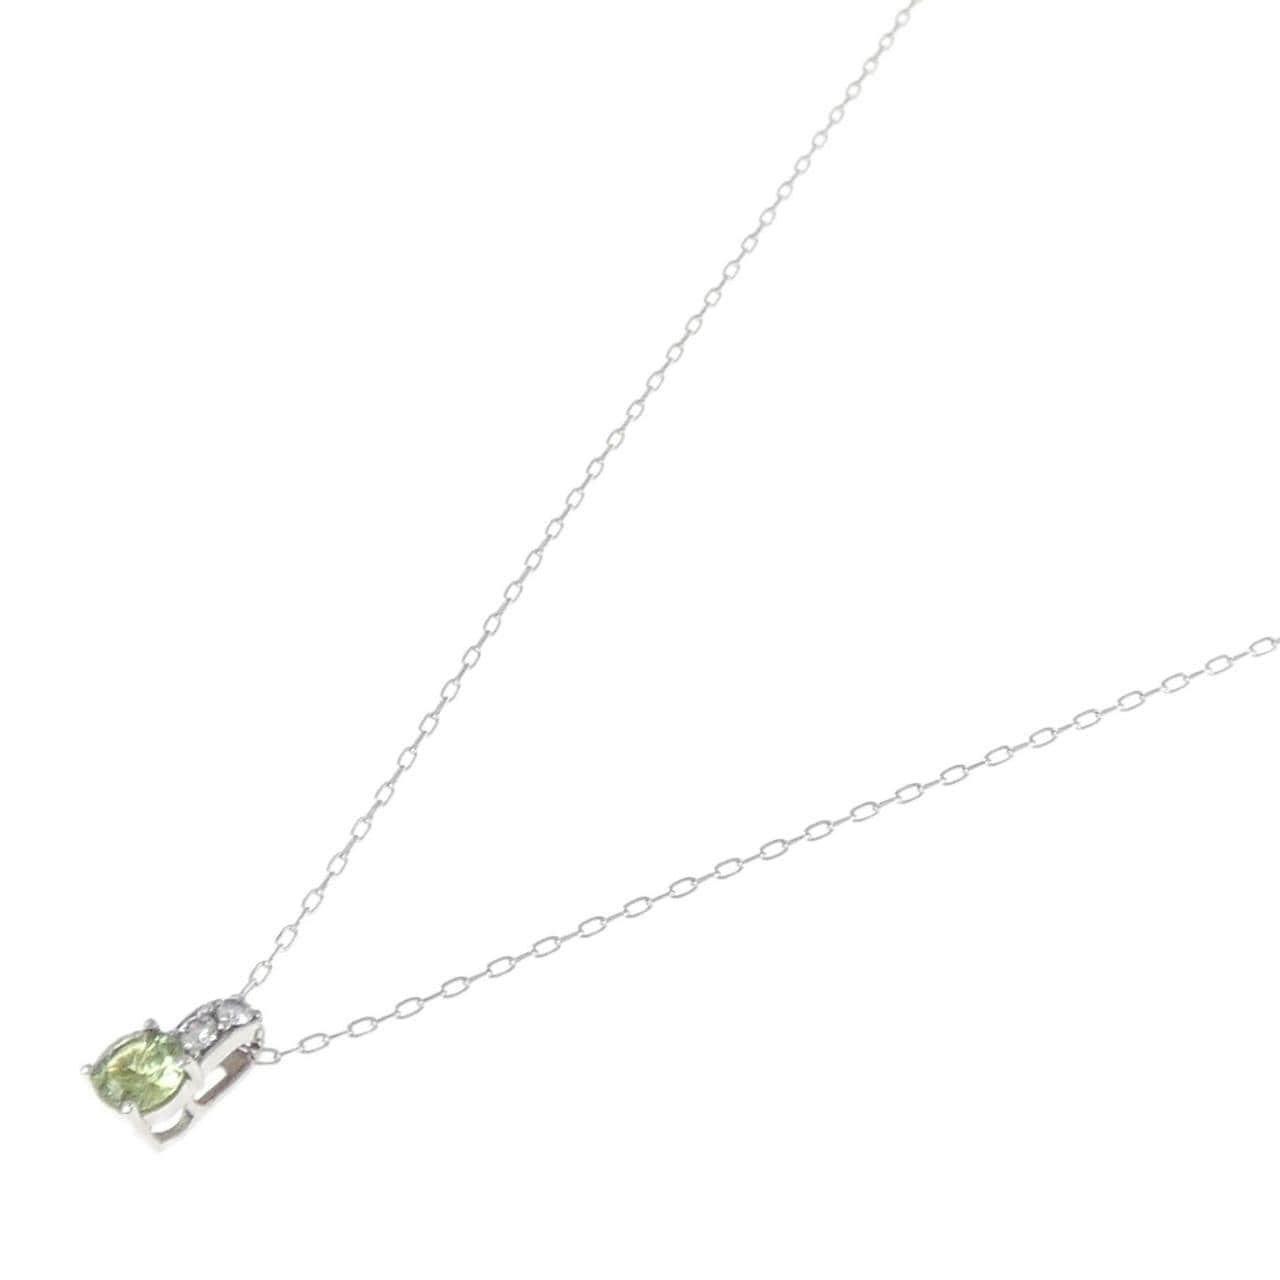 K18WG Demantoid garnet necklace 0.40CT